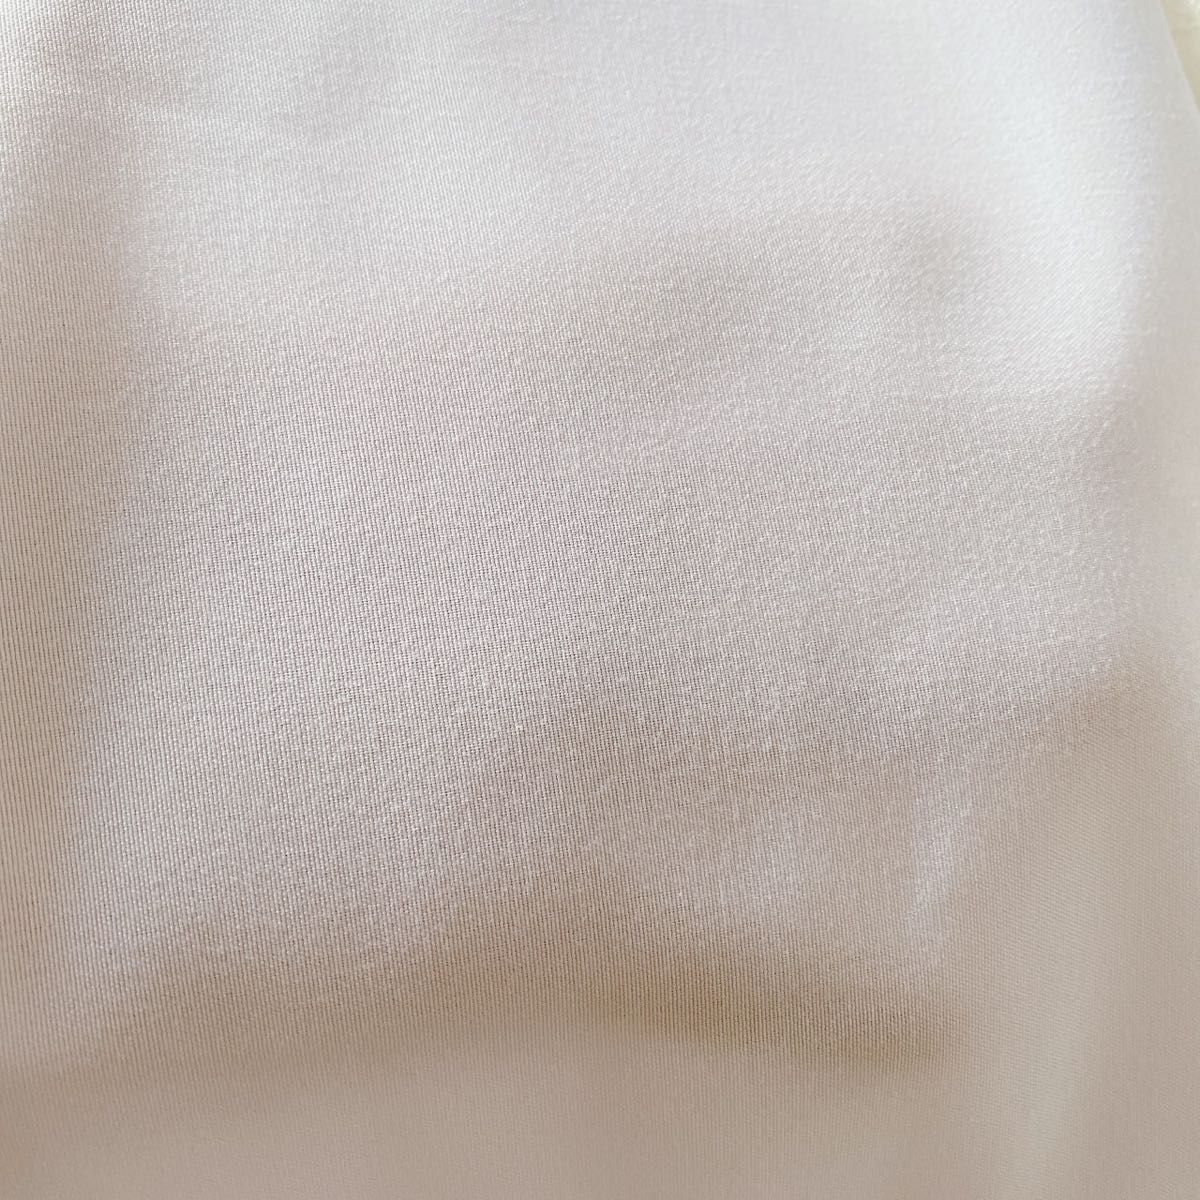 背景布 ホワイト 白 大判布 撮影 誕生日 インスタ映え フェルカムスペース インテリア バックペーパー 一枚布 150×100